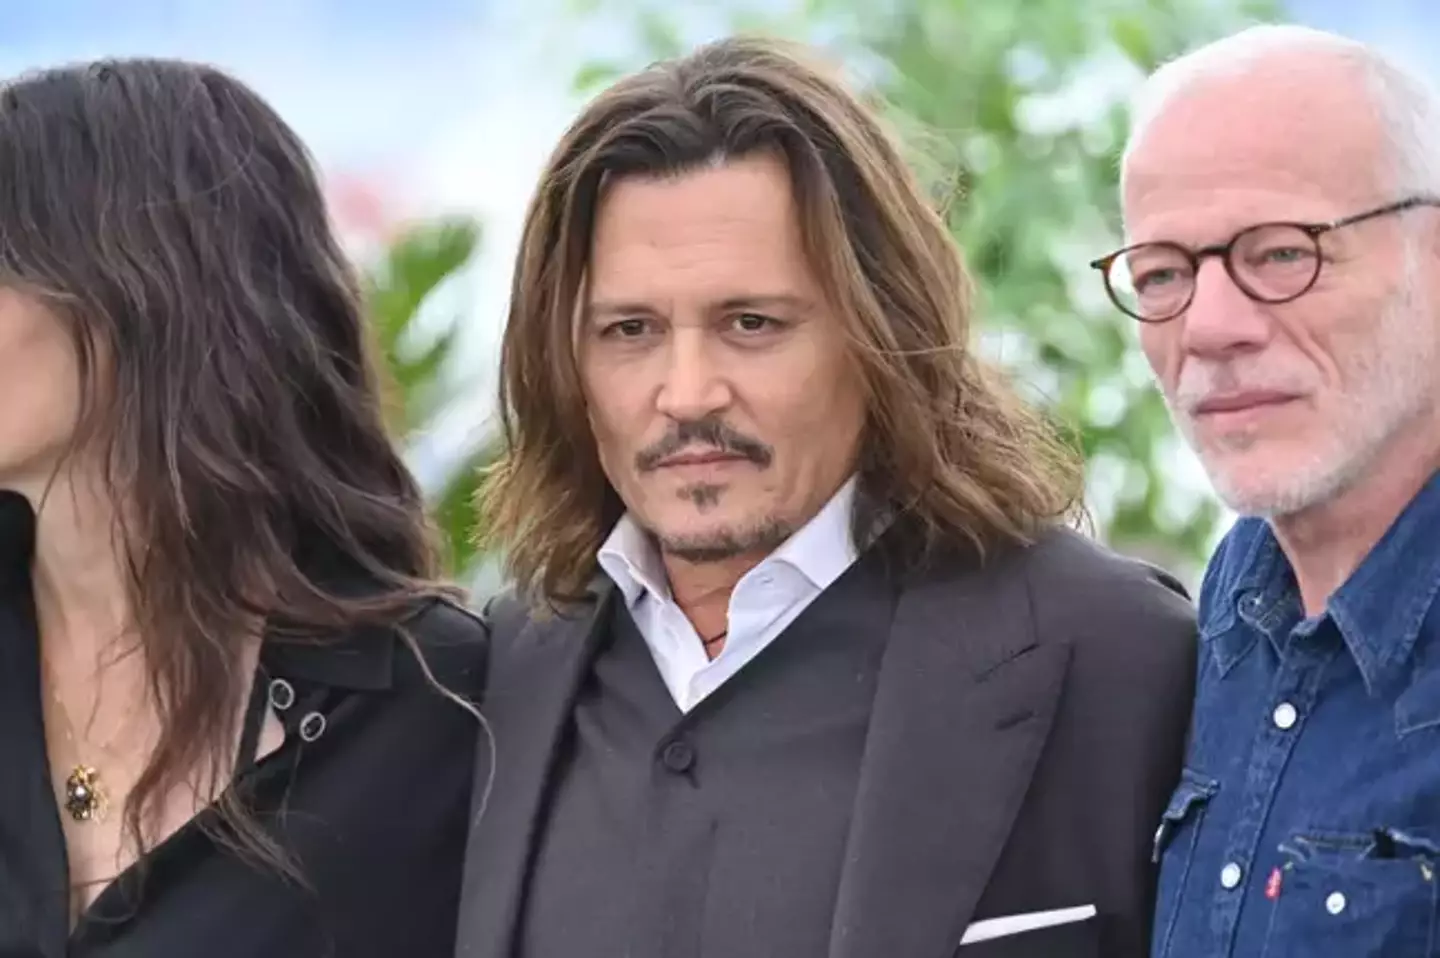 The $1 million is being split five ways between several charities of Depp's choosing.